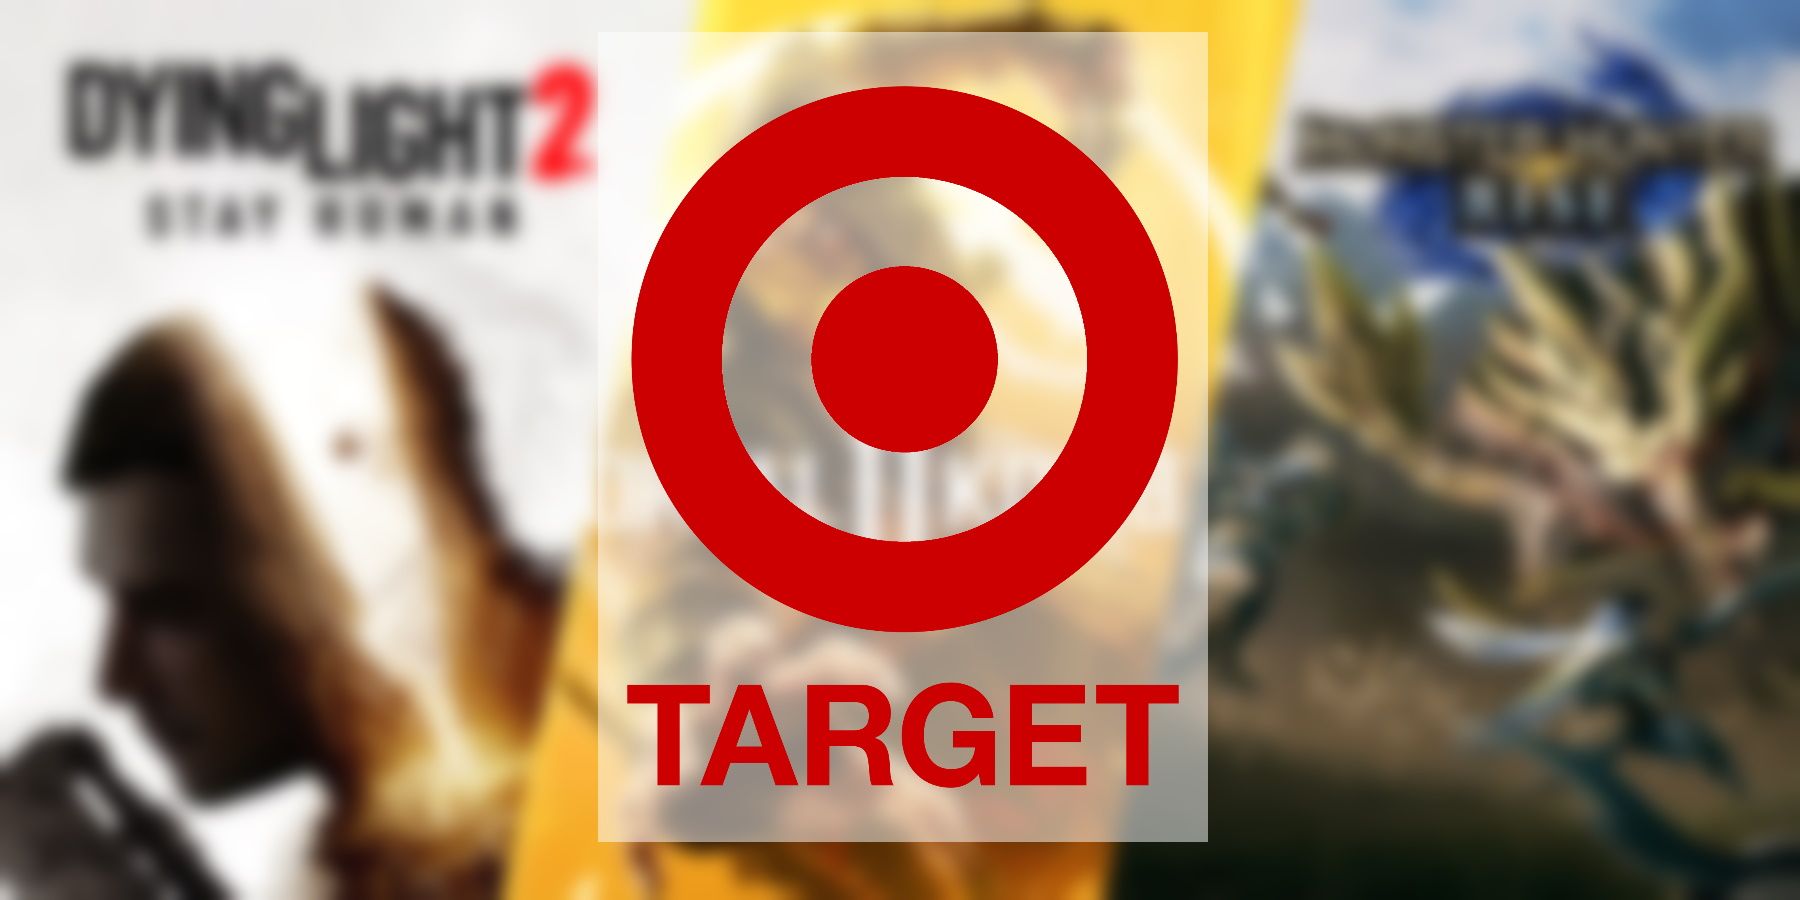 Target Running Buy 2 Получить 1 бесплатную сделку для видеоигр